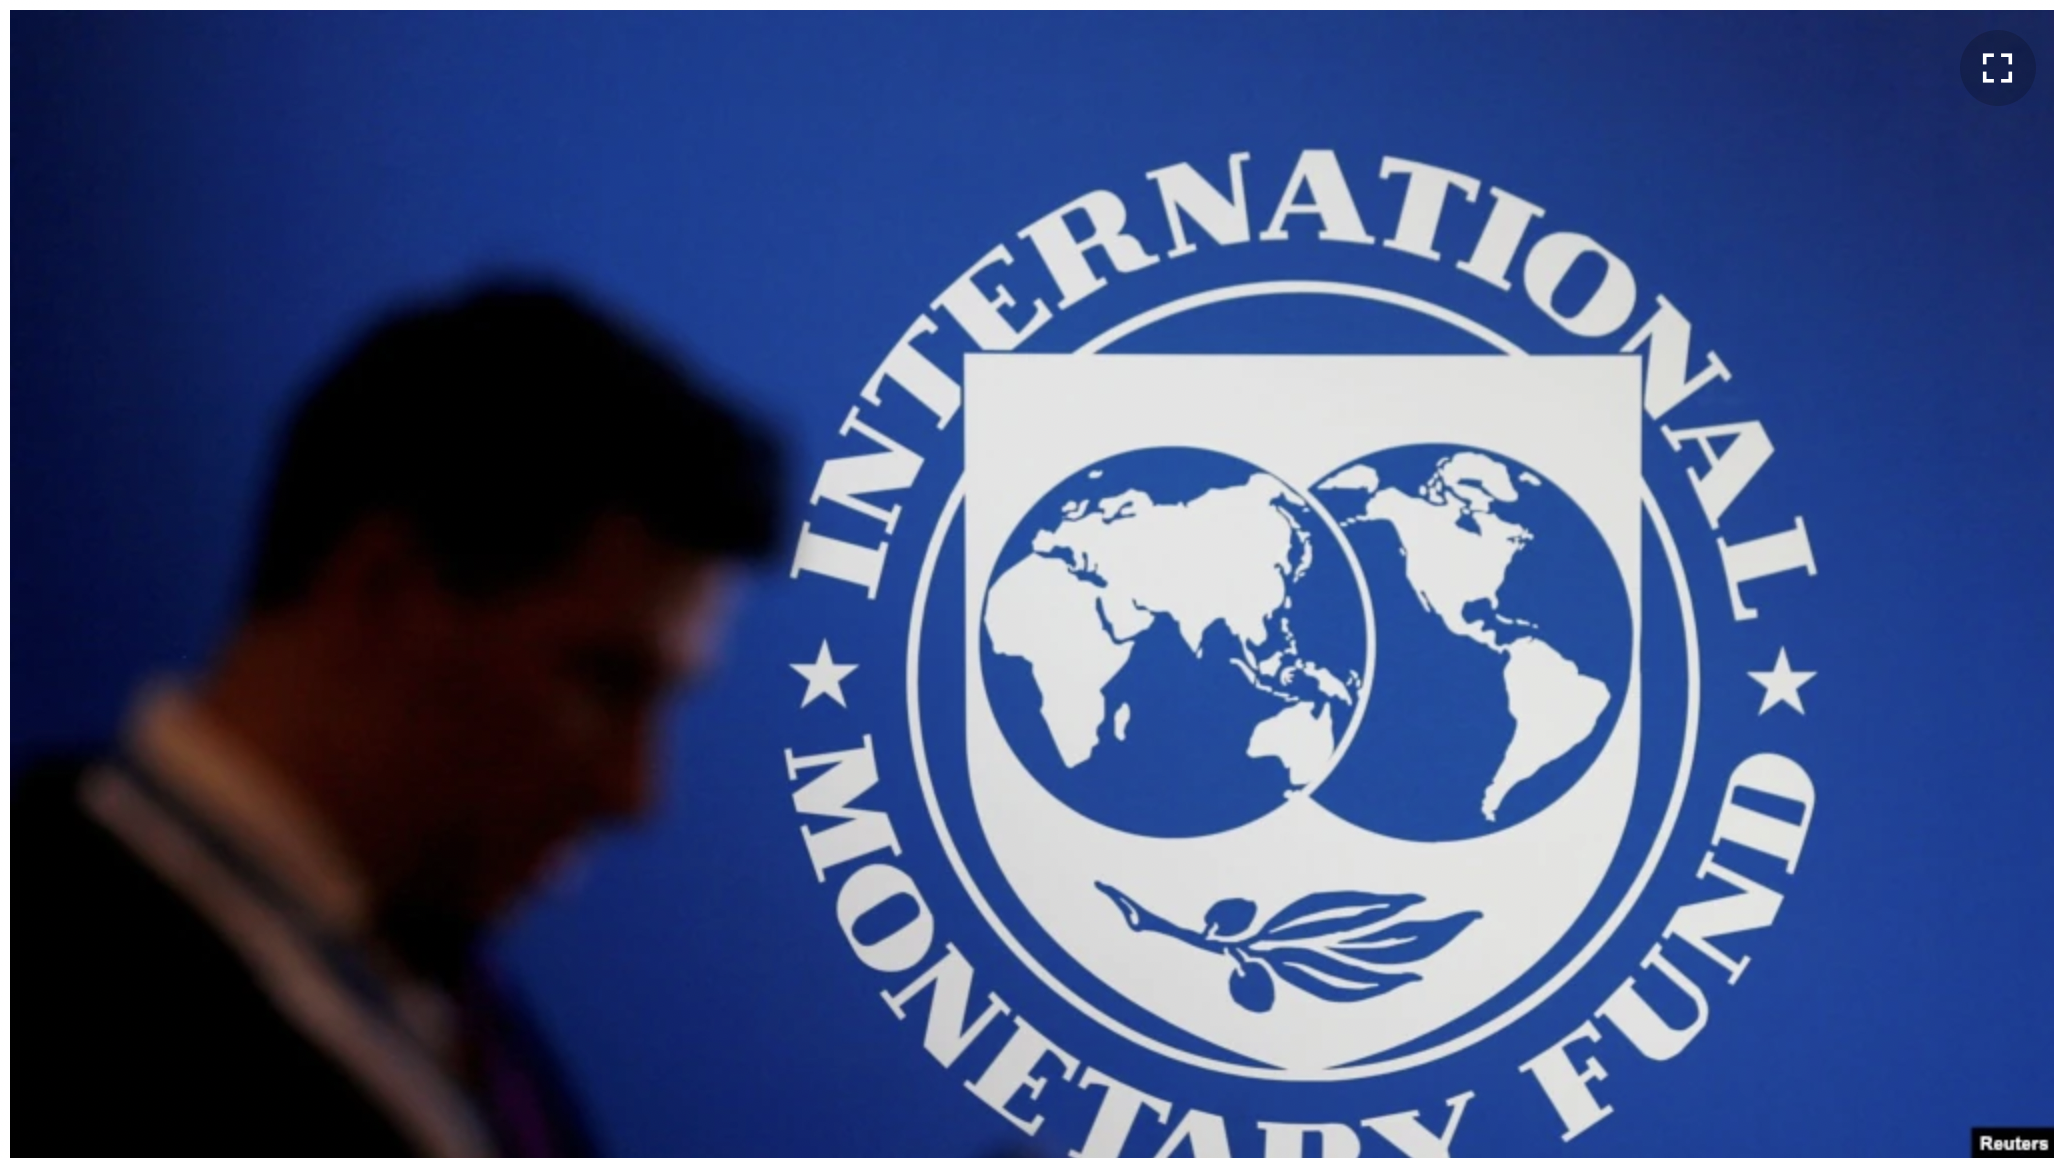 МВФ вимагає від України реформувати систему оподаткування